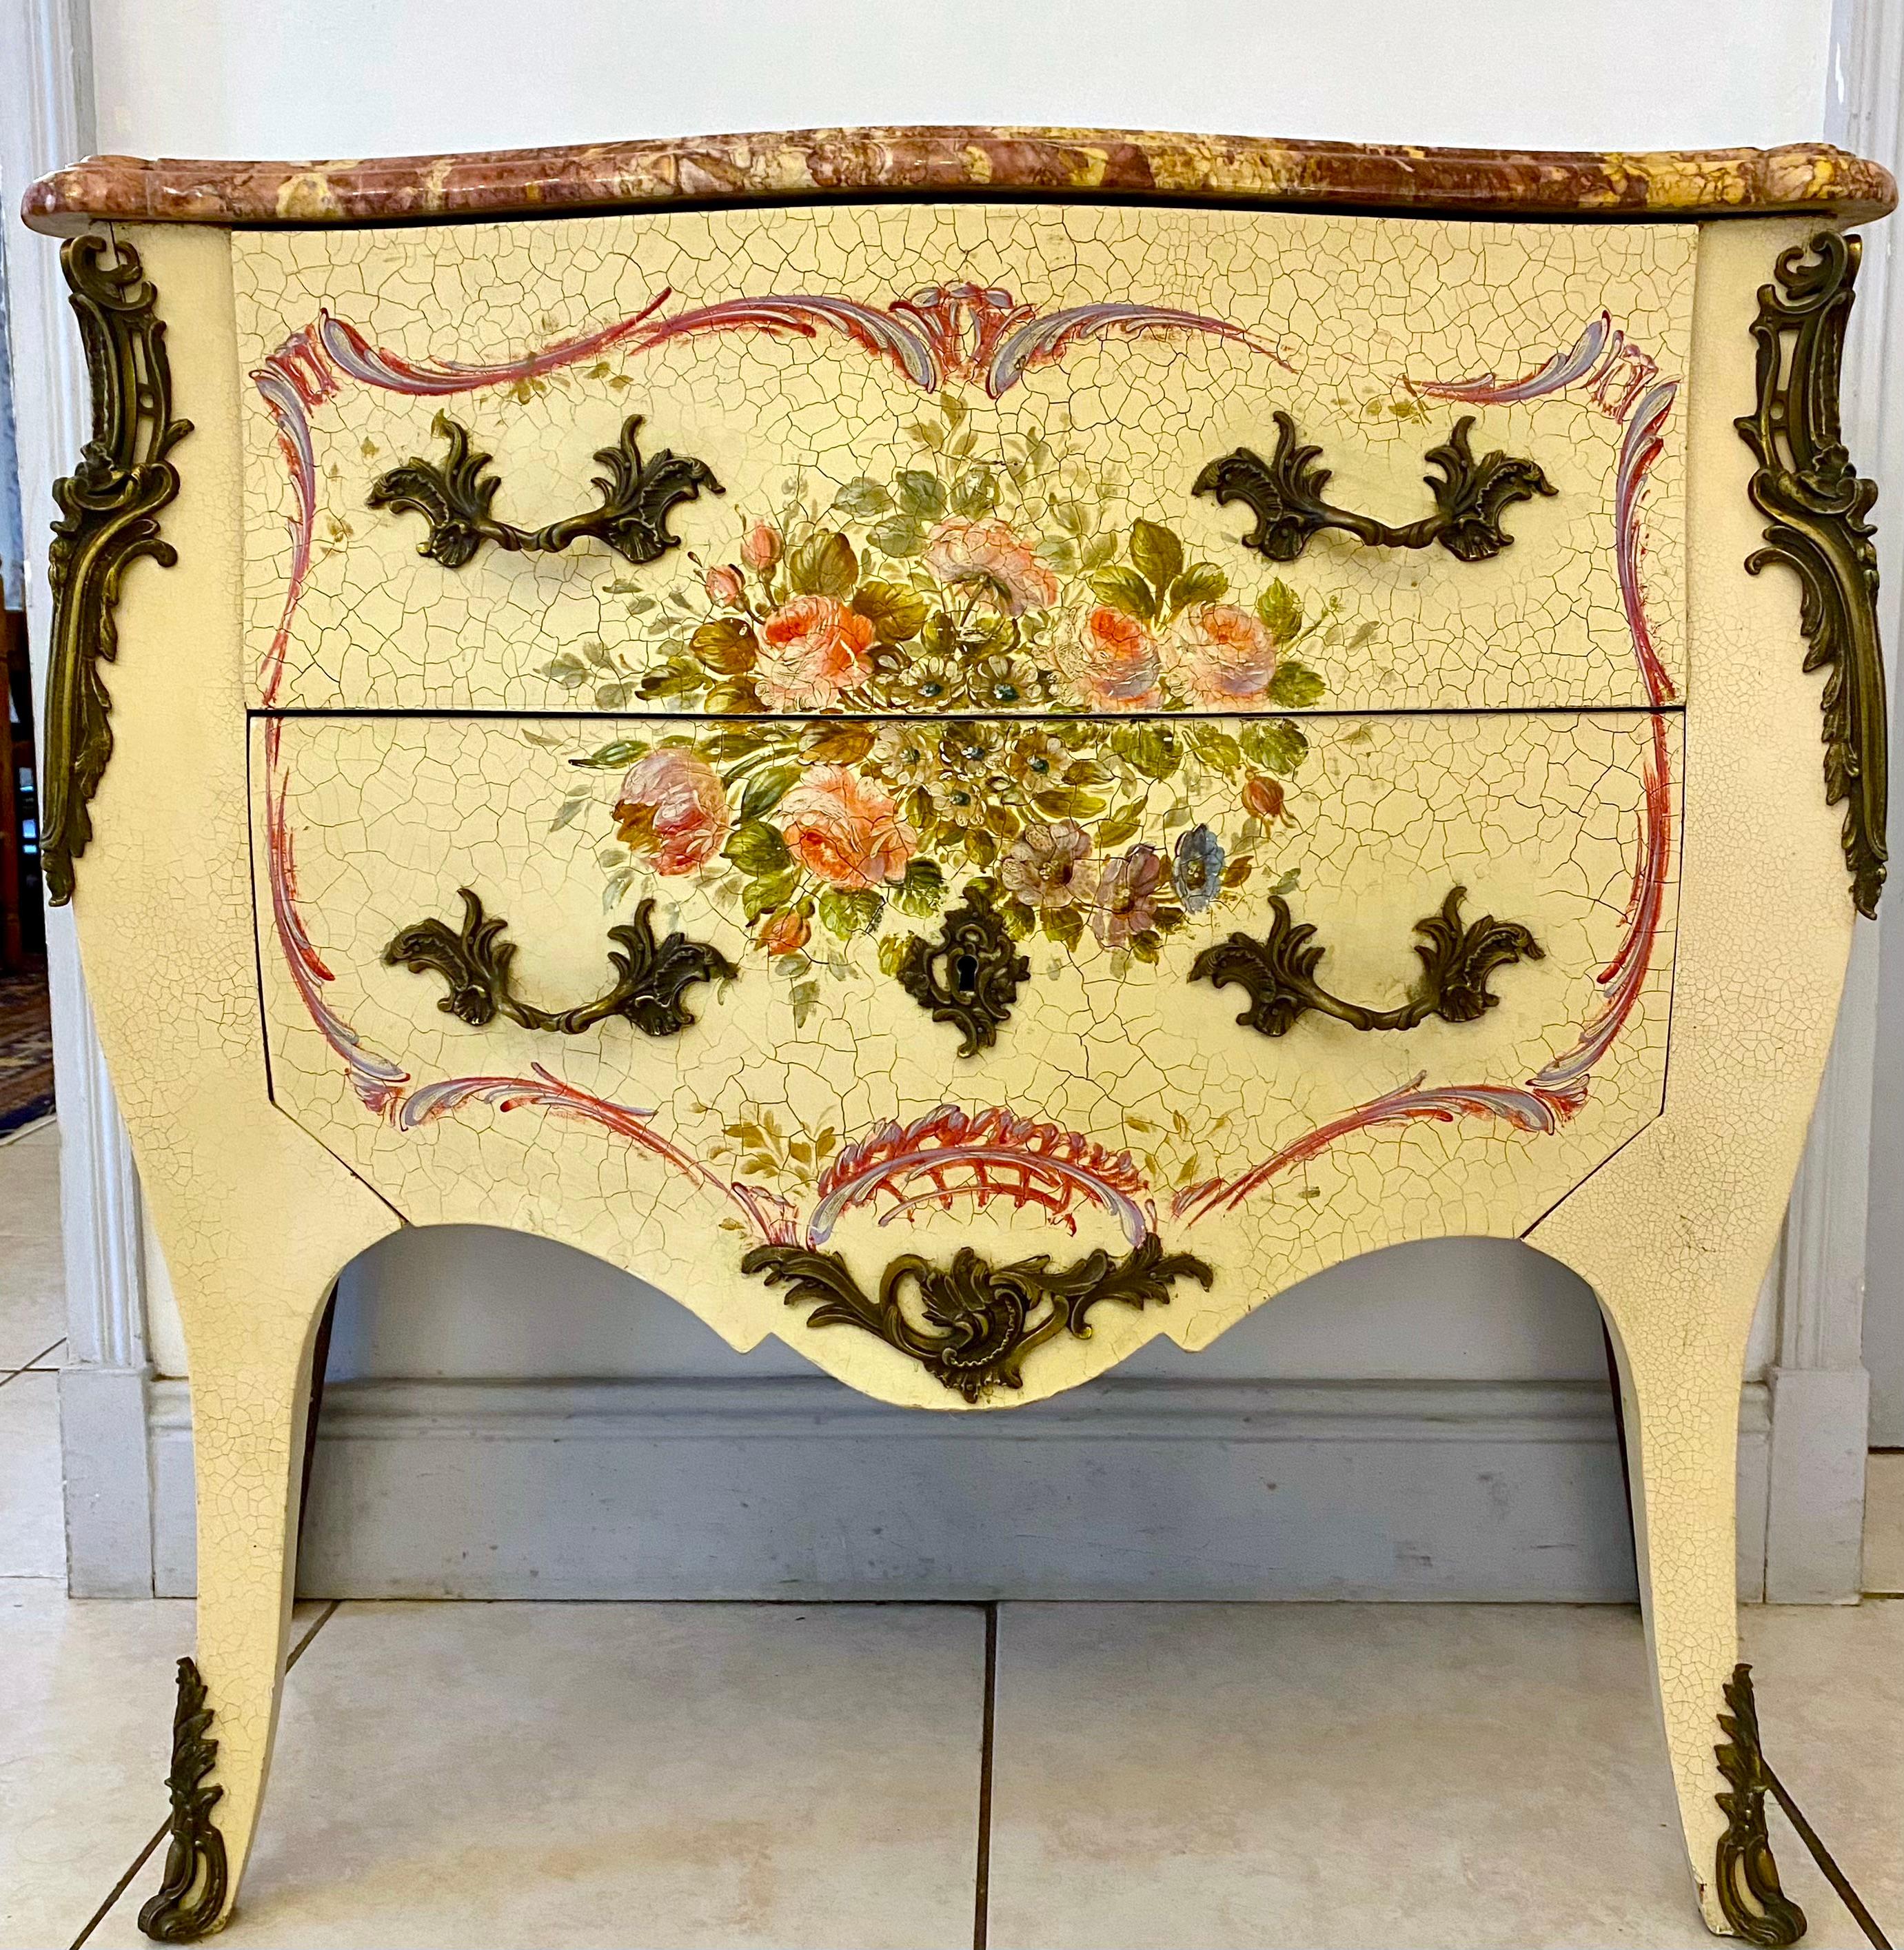 Italienische, venezianische oder genuesische Kommode aus bemaltem Holz mit sehr hübschem Blumendekor vom Ende des 19. Jahrhunderts im Stil Louis XV.
Er lässt sich mit zwei Schubladen öffnen und hat Säbelbeine.
Das Oberteil ist mit